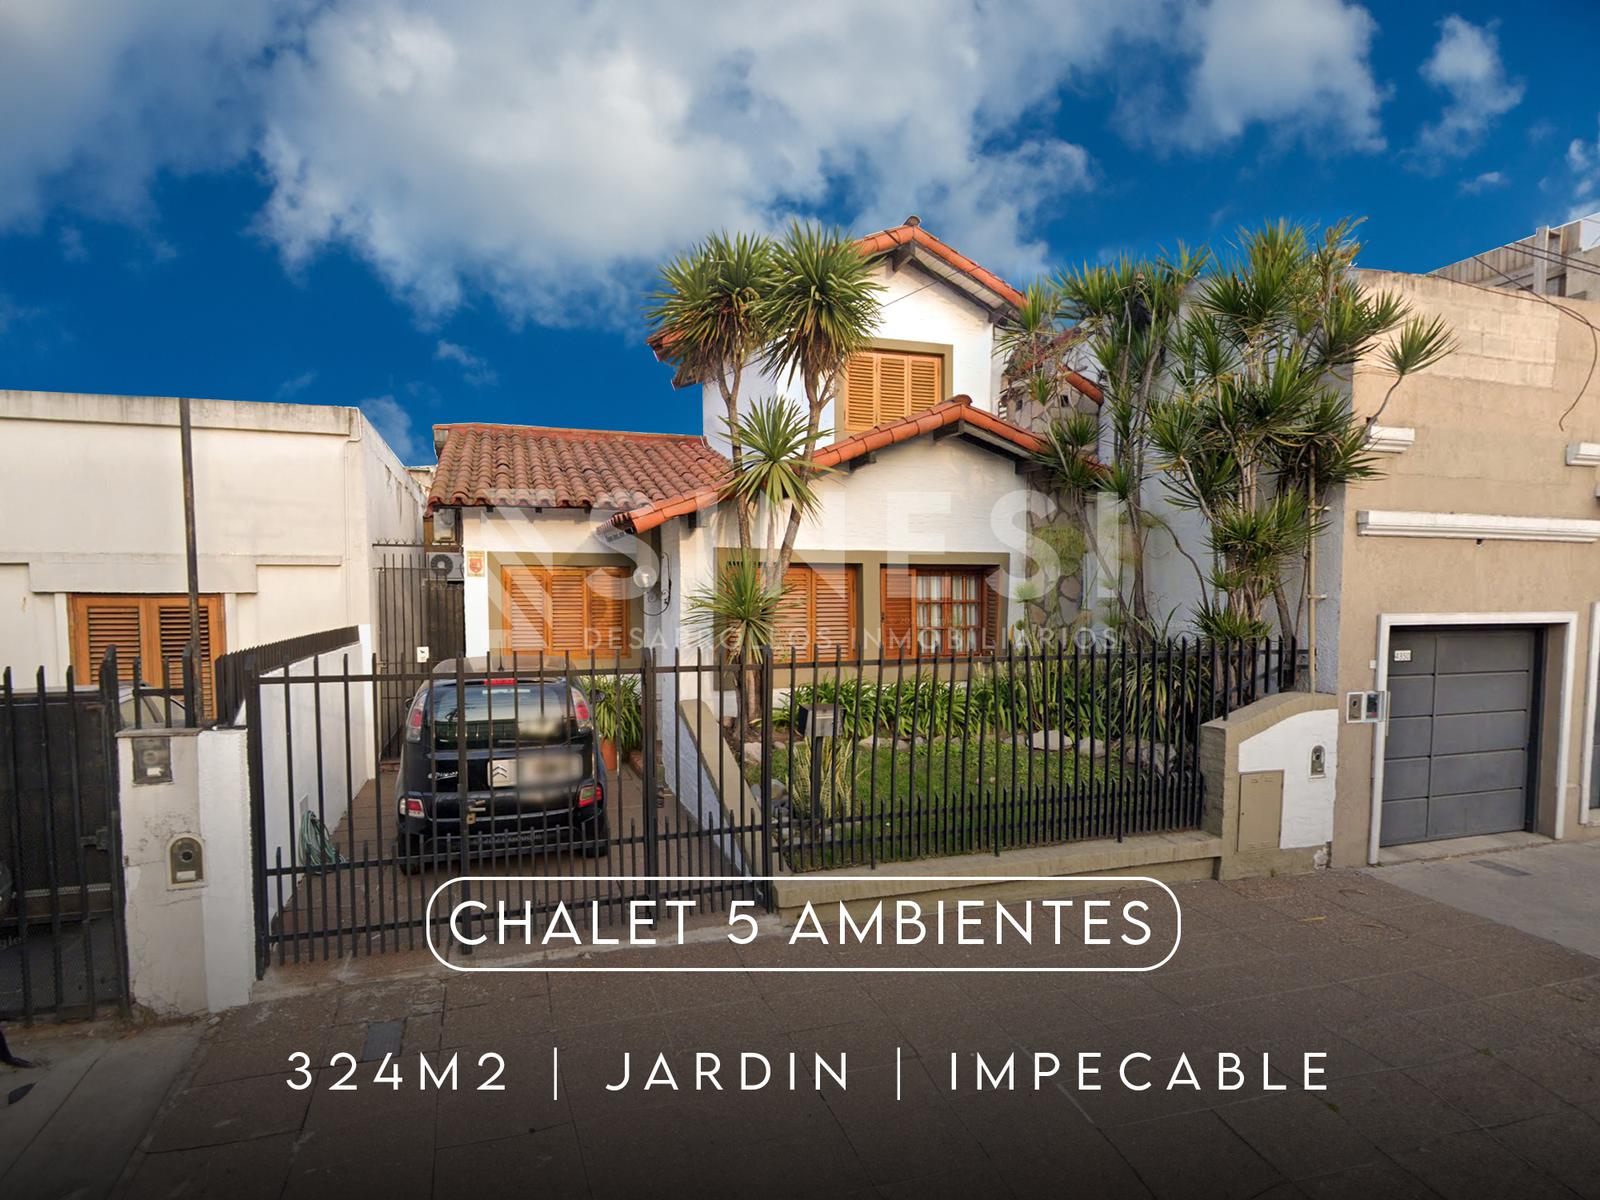 Chalet 5 ambientes - IMPECABLE - San Martin - Matheu